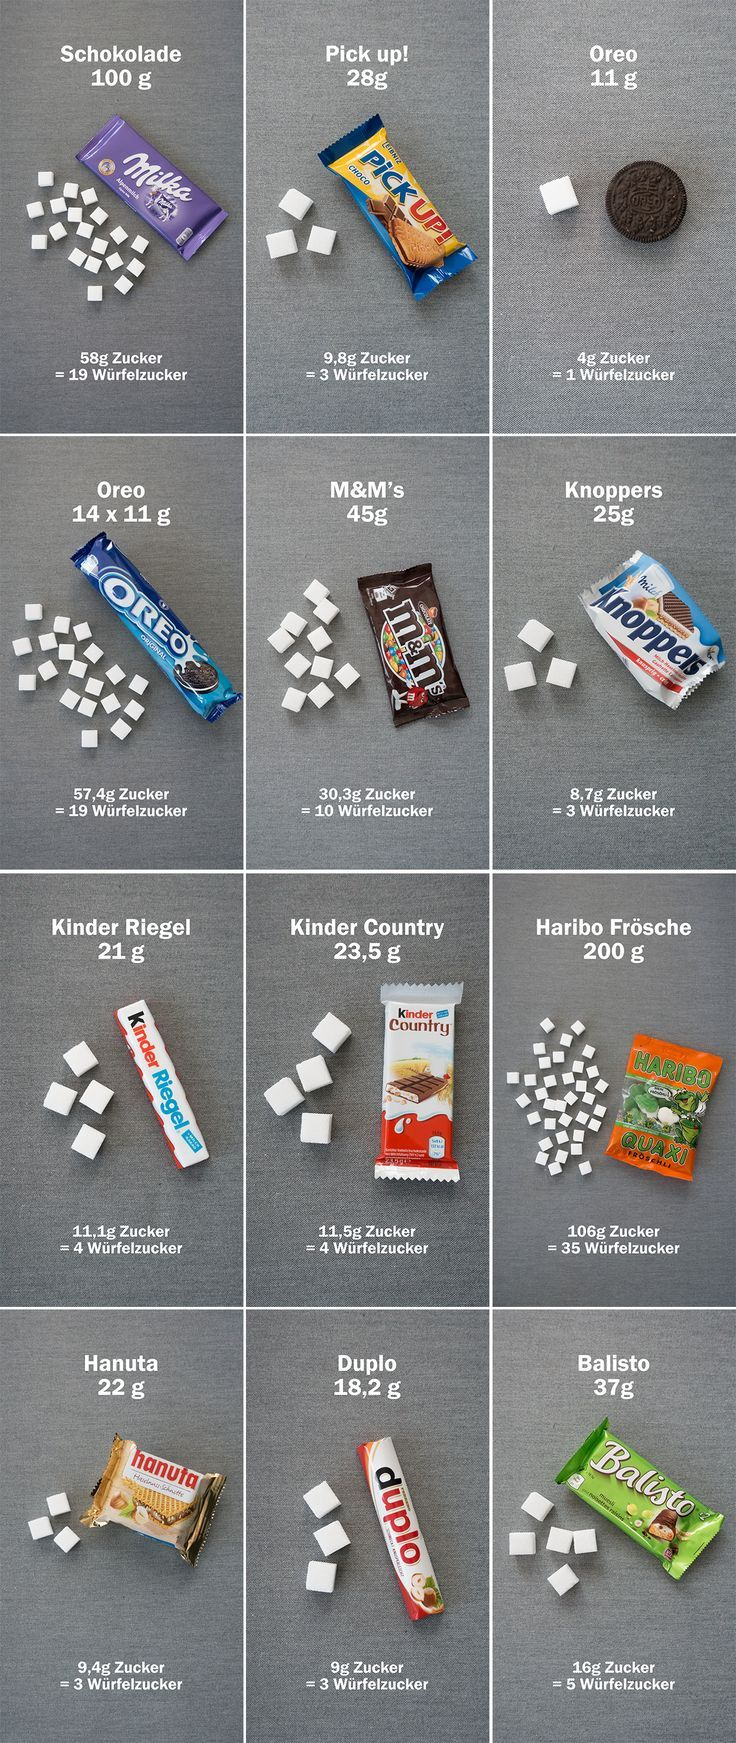 Wie Viel Zucker Steckt Drin | Lebensmittel Ohne Zucker mit Würfelzucker In Lebensmitteln Grundschule